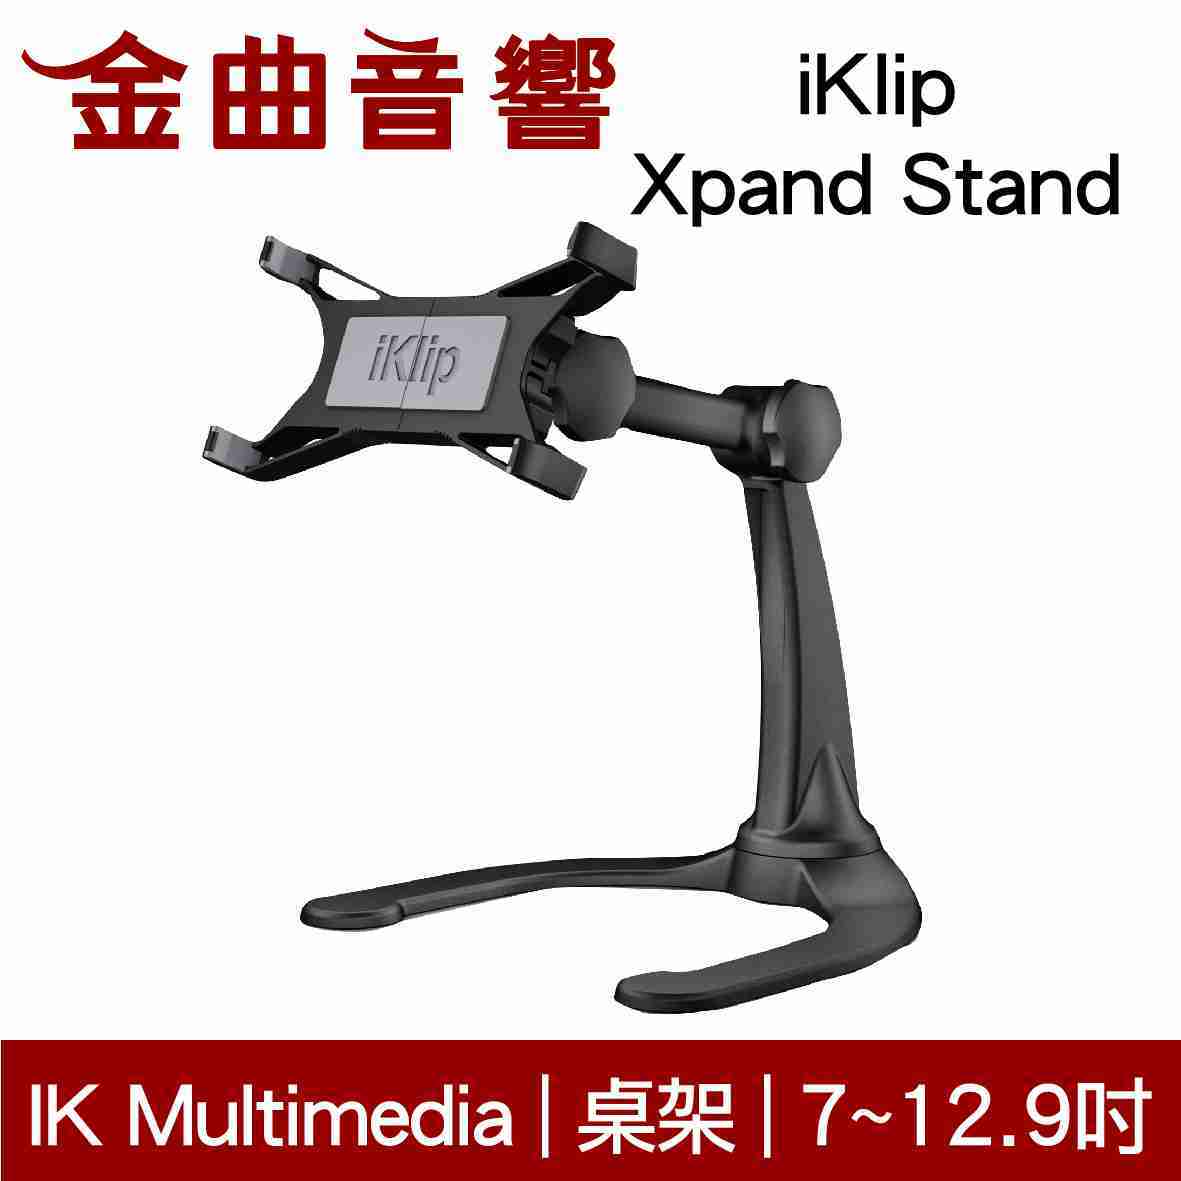 IK Multimedia iKlip Xpand Stand iPad 平板 專用 桌上型 支架 | 金曲音響